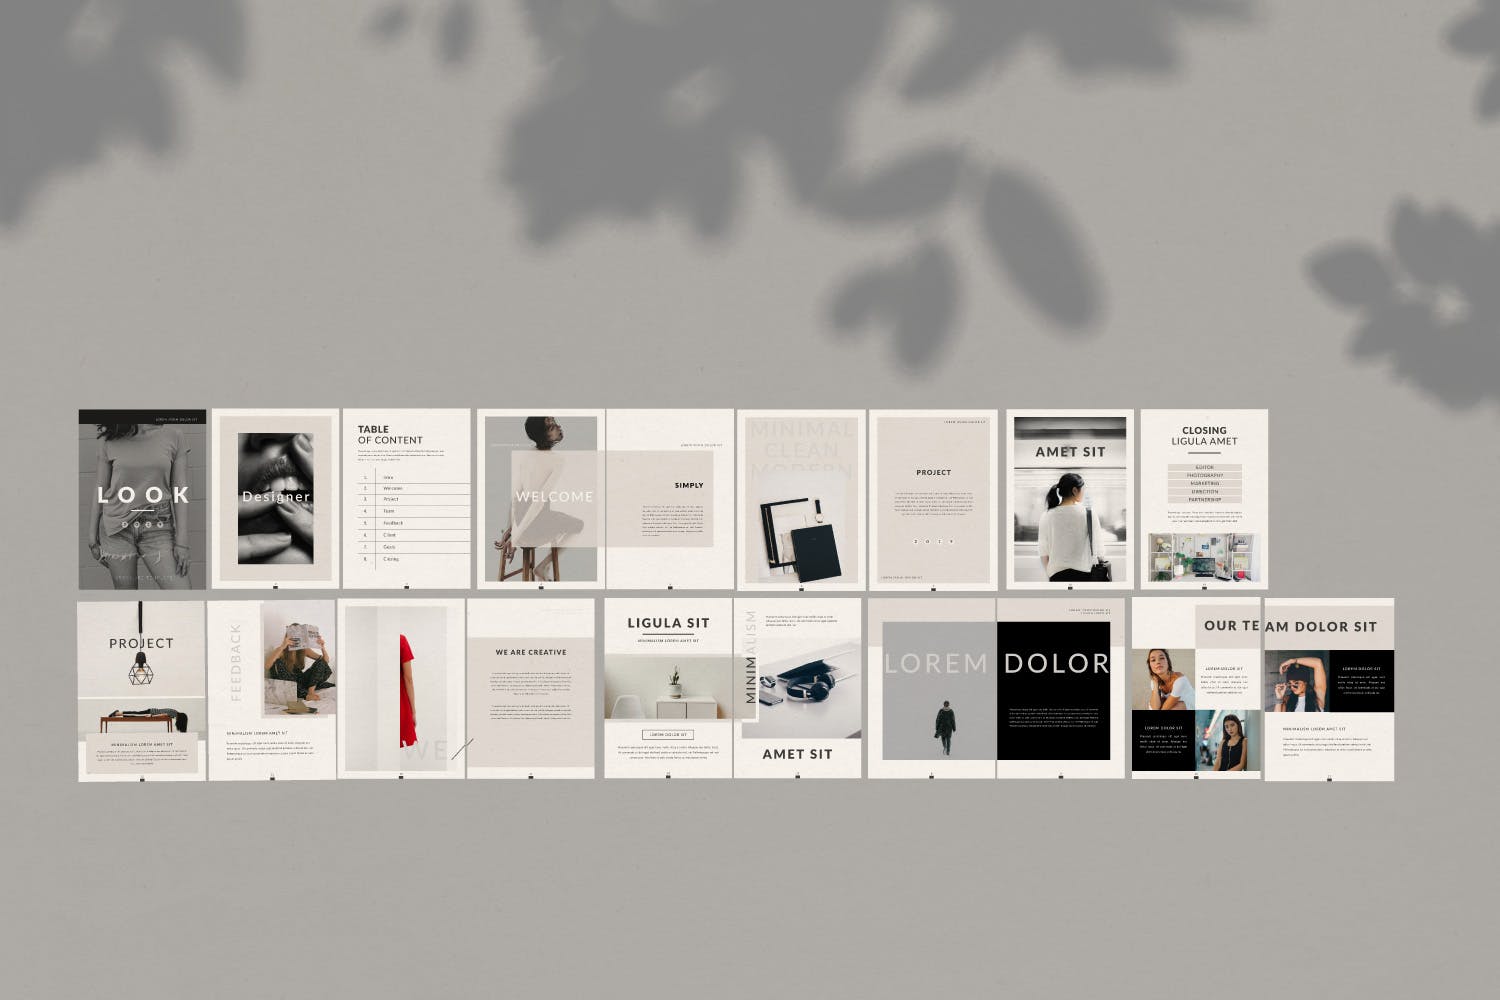 极简主义设计风格企业业务手册16图库精选Lookbook设计模板 Lookbook插图(4)